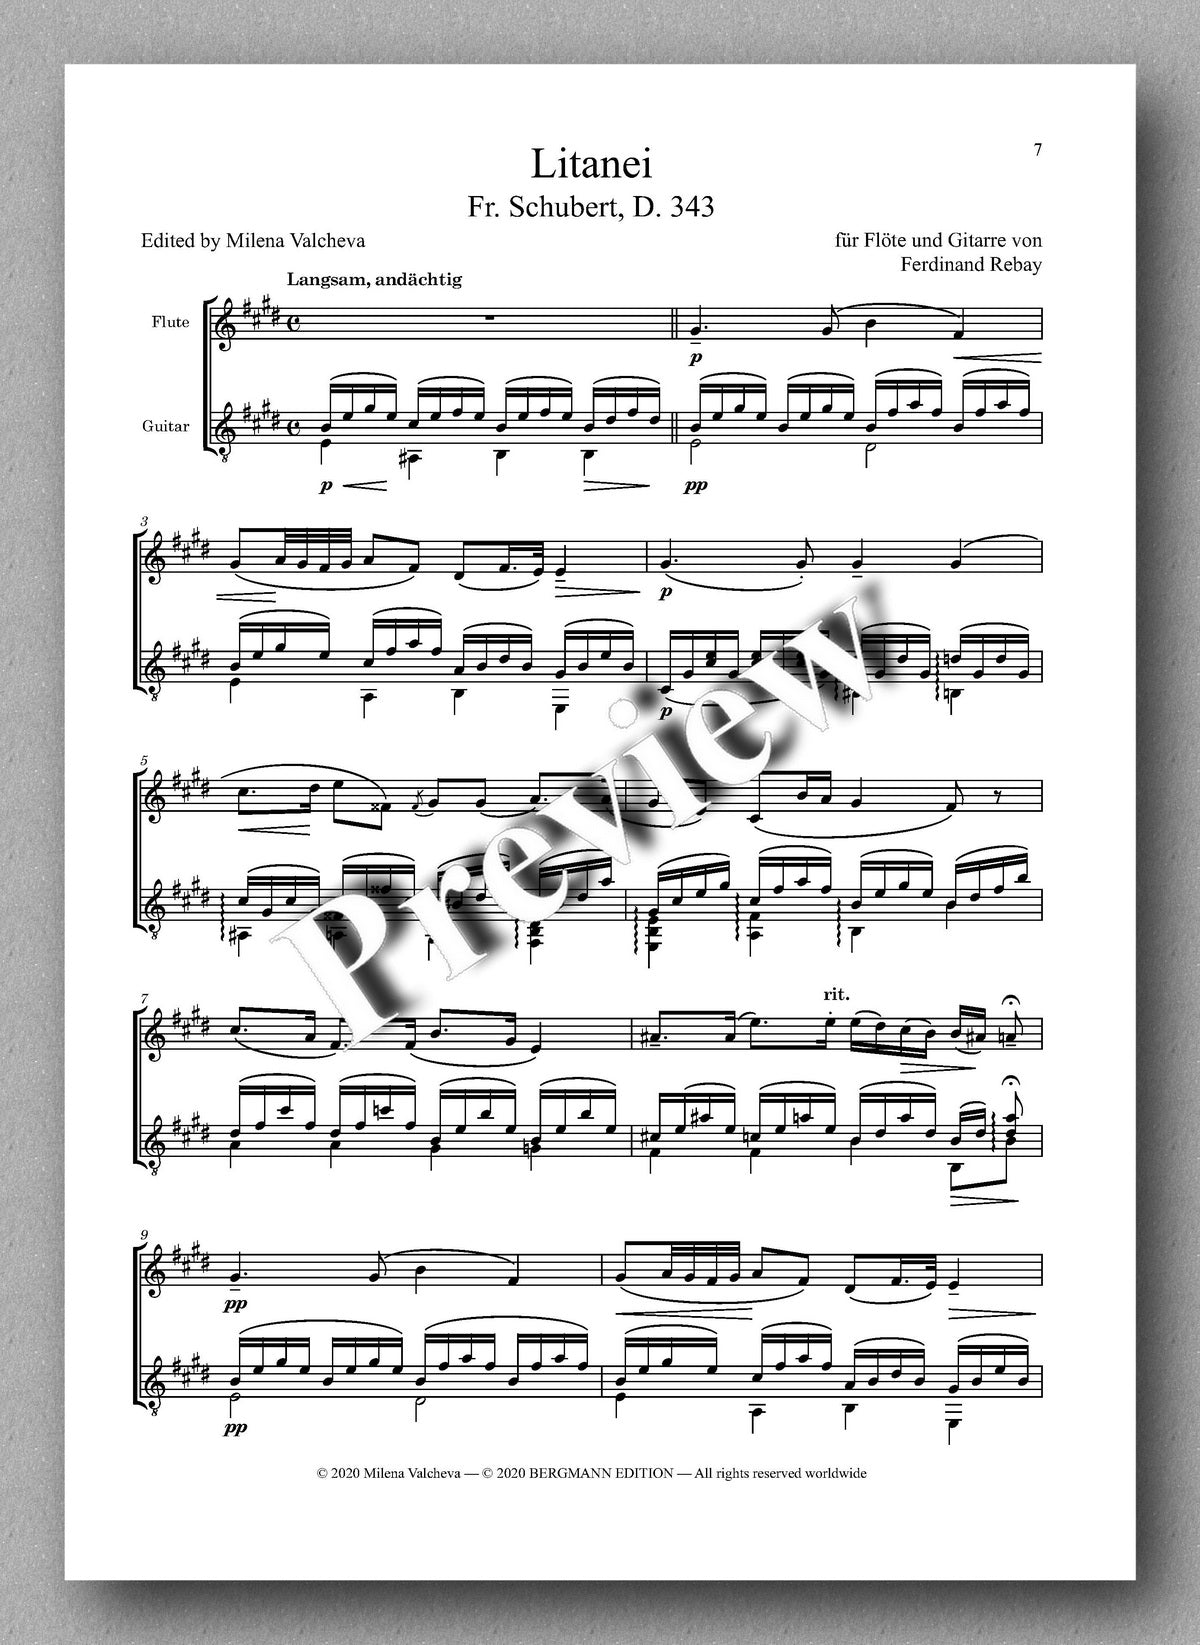 Rebay [158], Sechs Lieder von Franz Schubert - music score 2